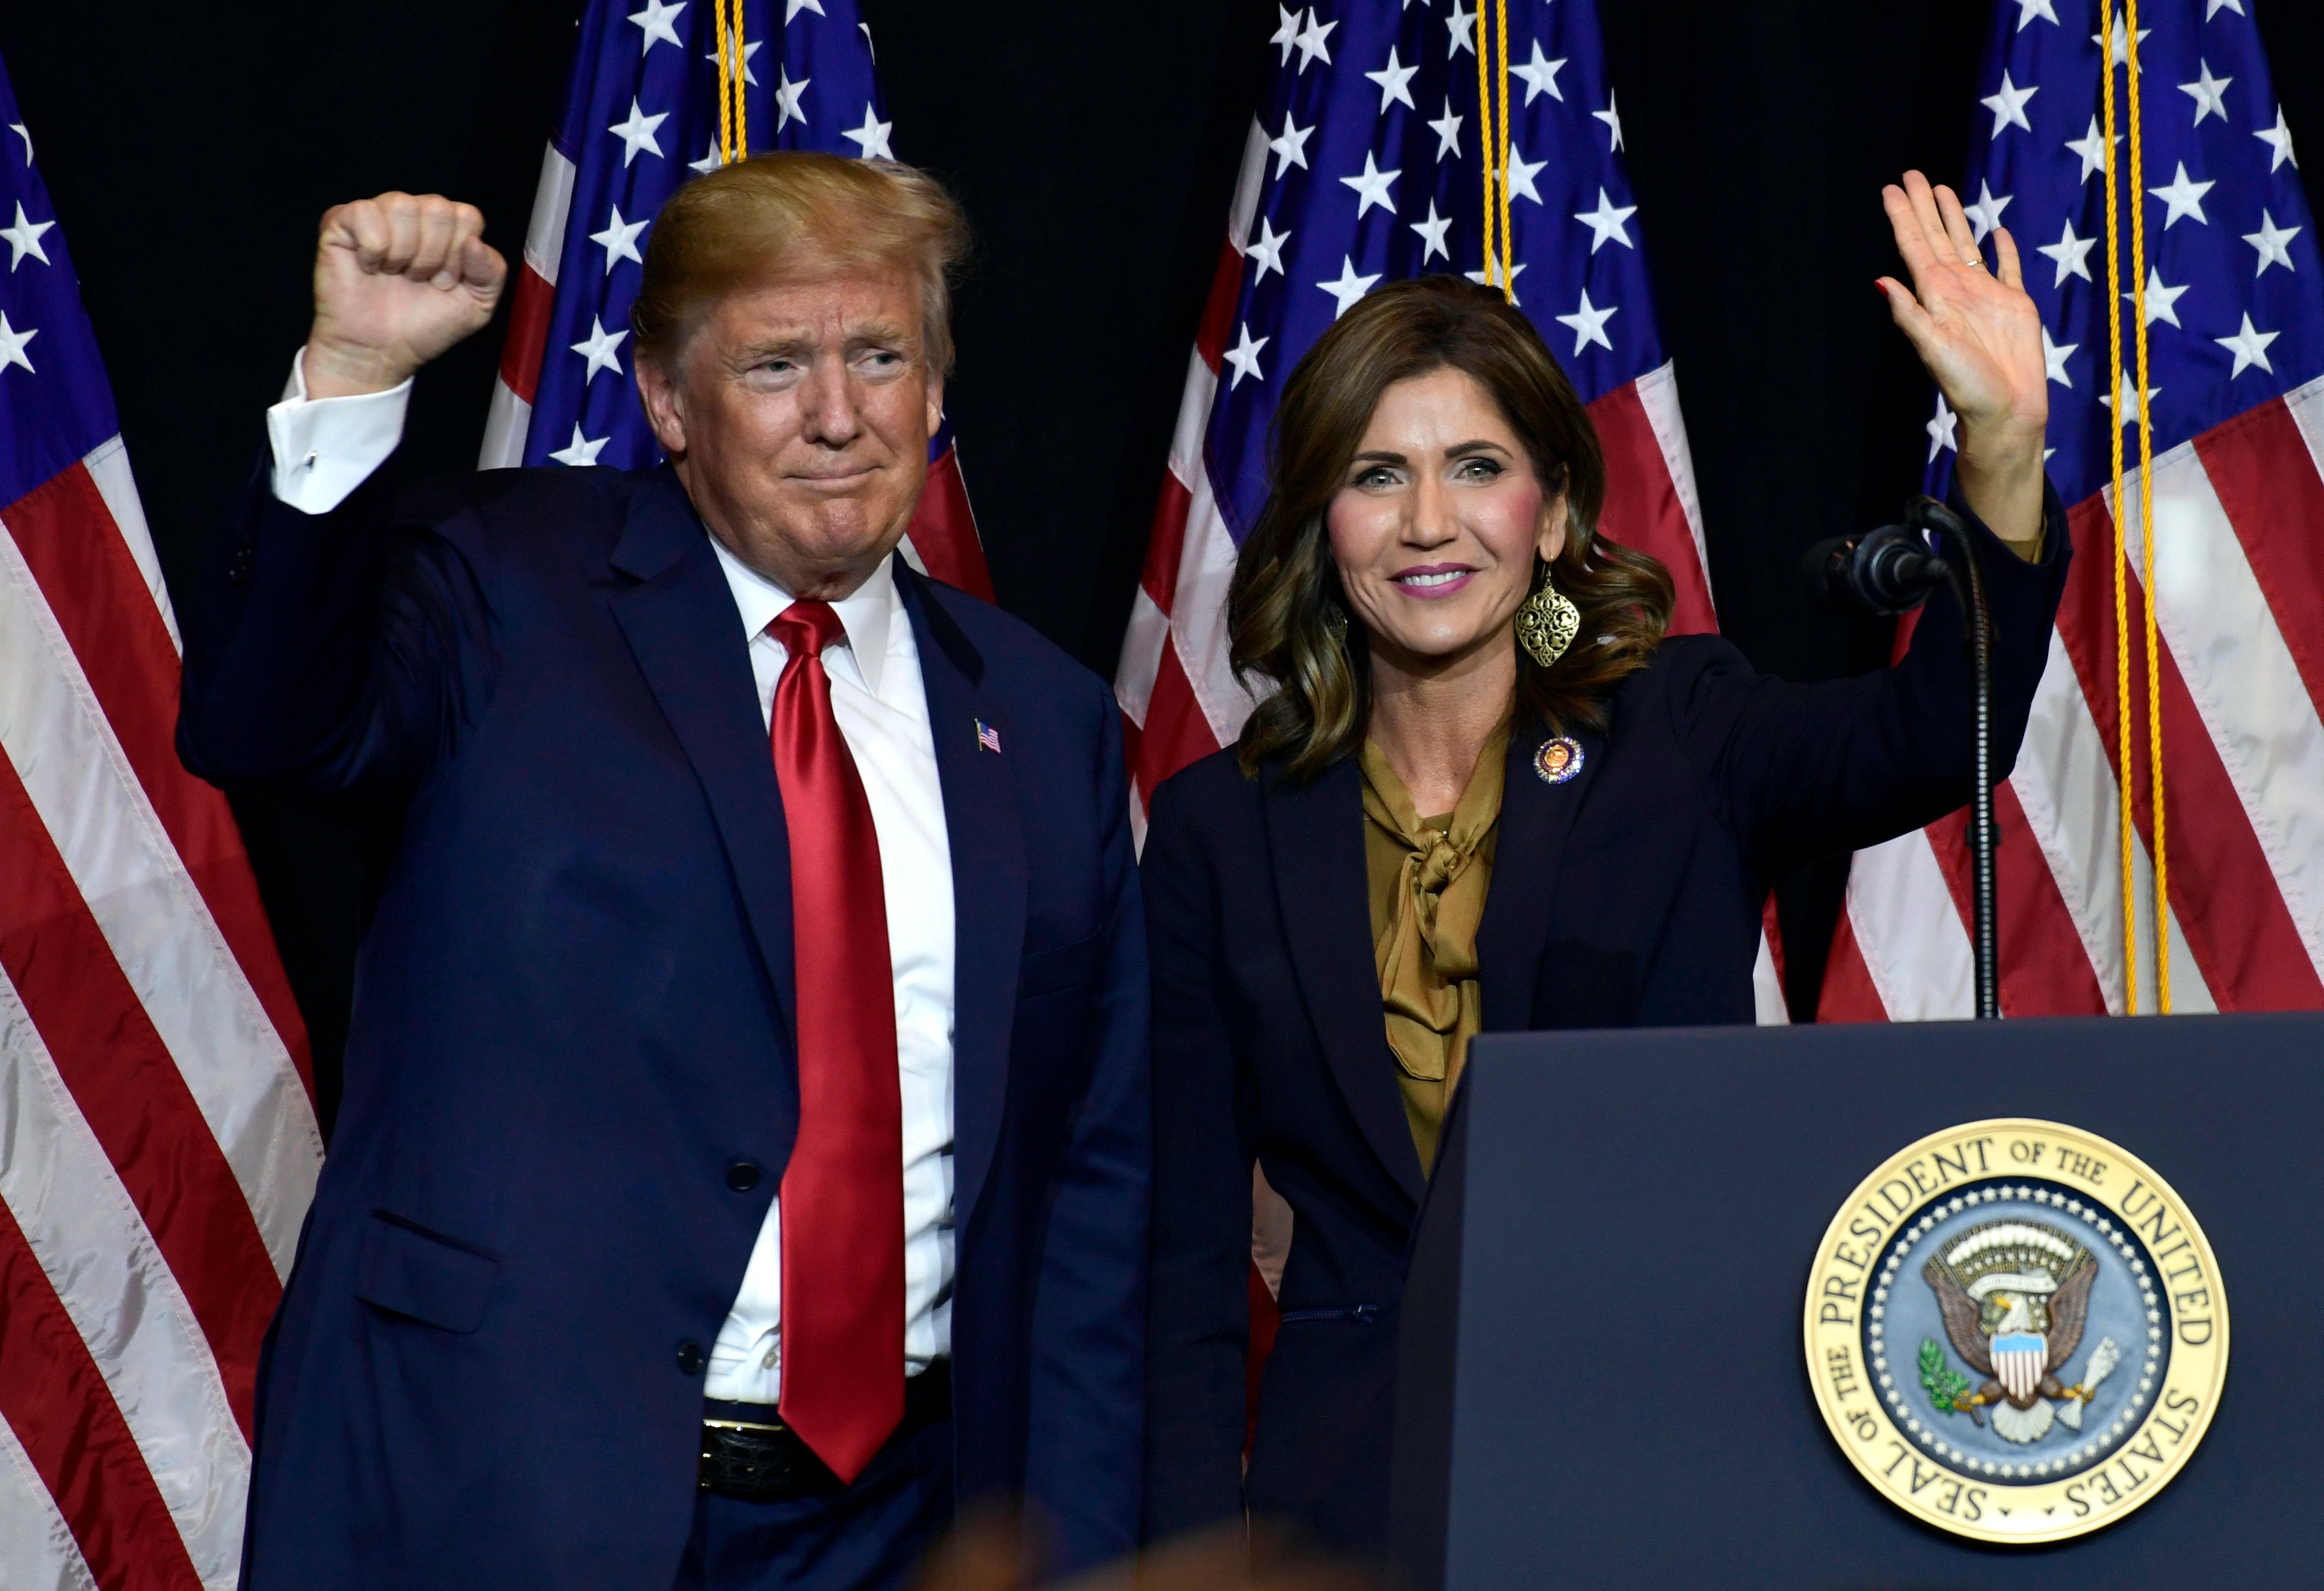 Donald Trump appears with South Dakota Goveornor Kristi Noem in 2018